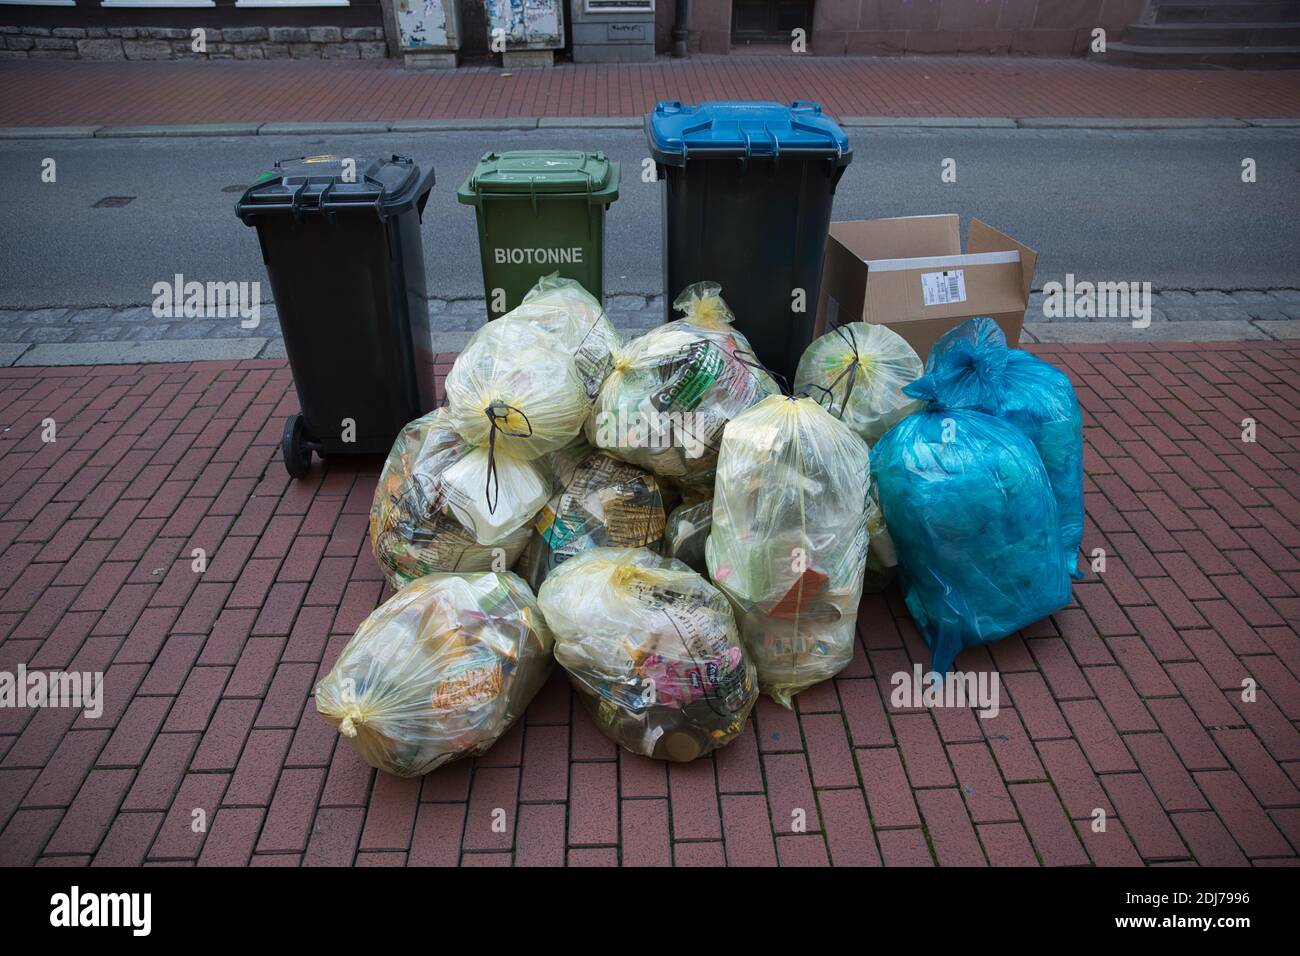 Sacchi per rifiuti e contenitori in plastica con riciclaggio sul marciapiede pavimentato. Vista frontale. Foto Stock